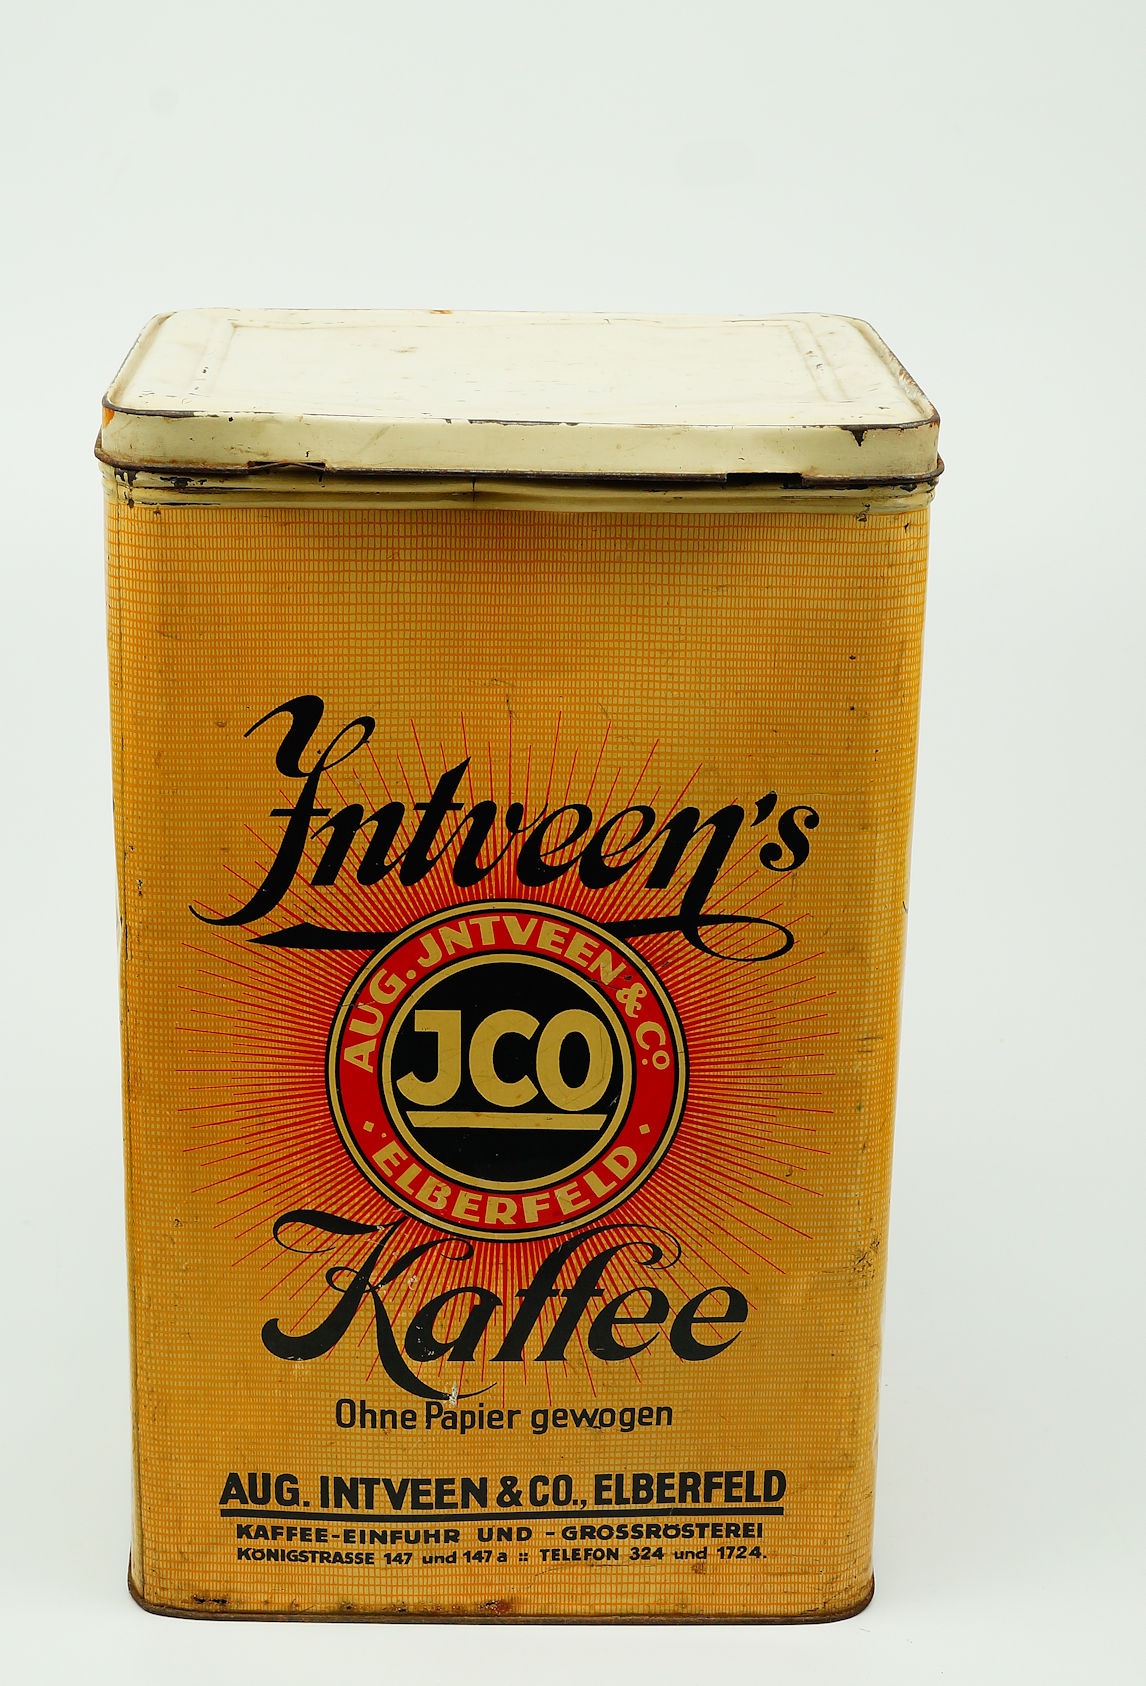 Kaffeebehälter, Blechdose, Intveen-Kaffee, 1. Jälfte 19. Jh. (Museum Weißenfels - Schloss Neu-Augustusburg CC BY-NC-SA)